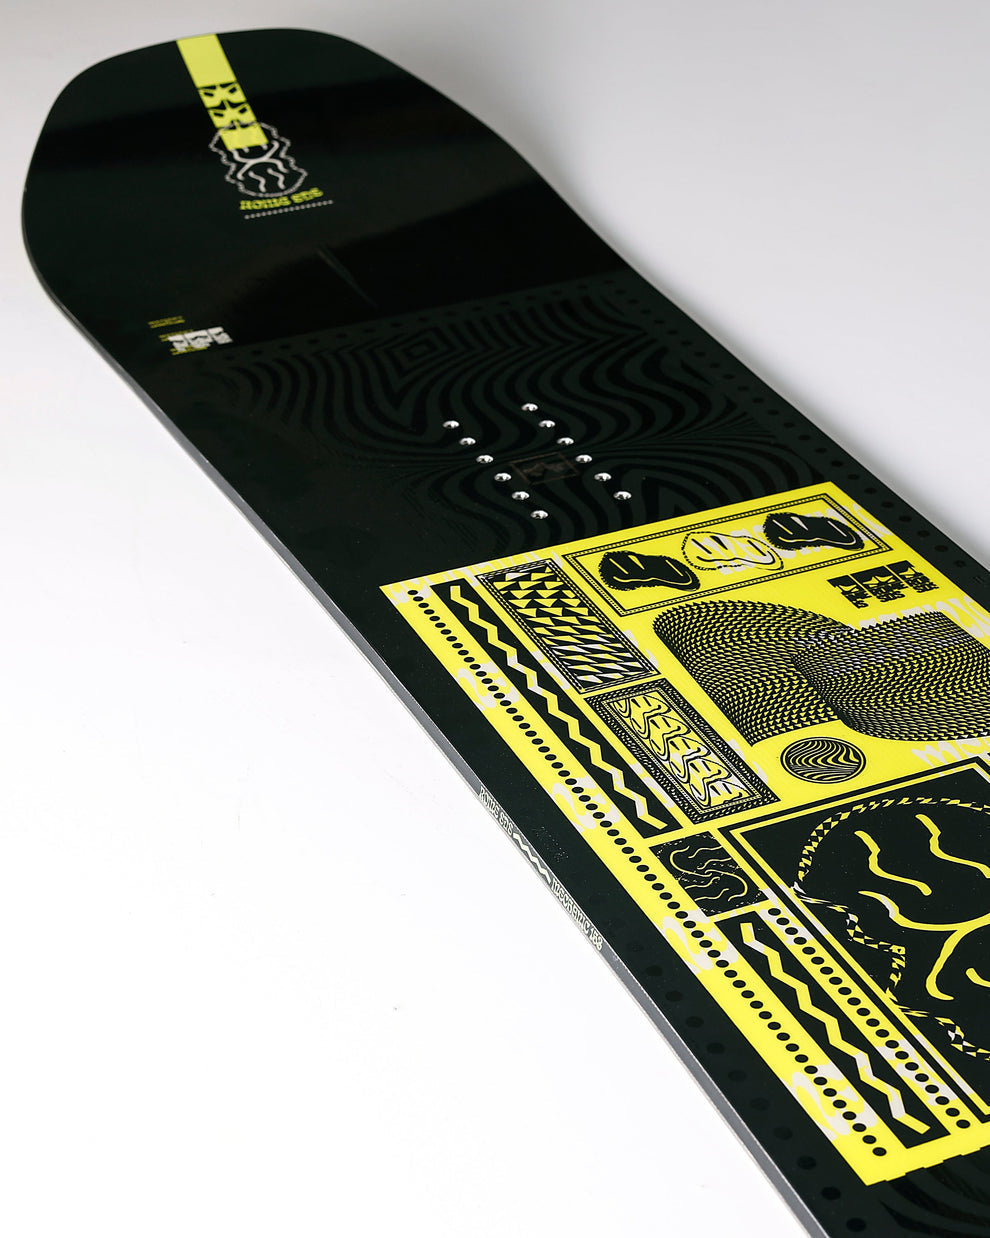 Rome snowboards Mechanic 157 large | Nouveaux produits | Produits les plus récents | Produits les plus vendus | surfdevils.com